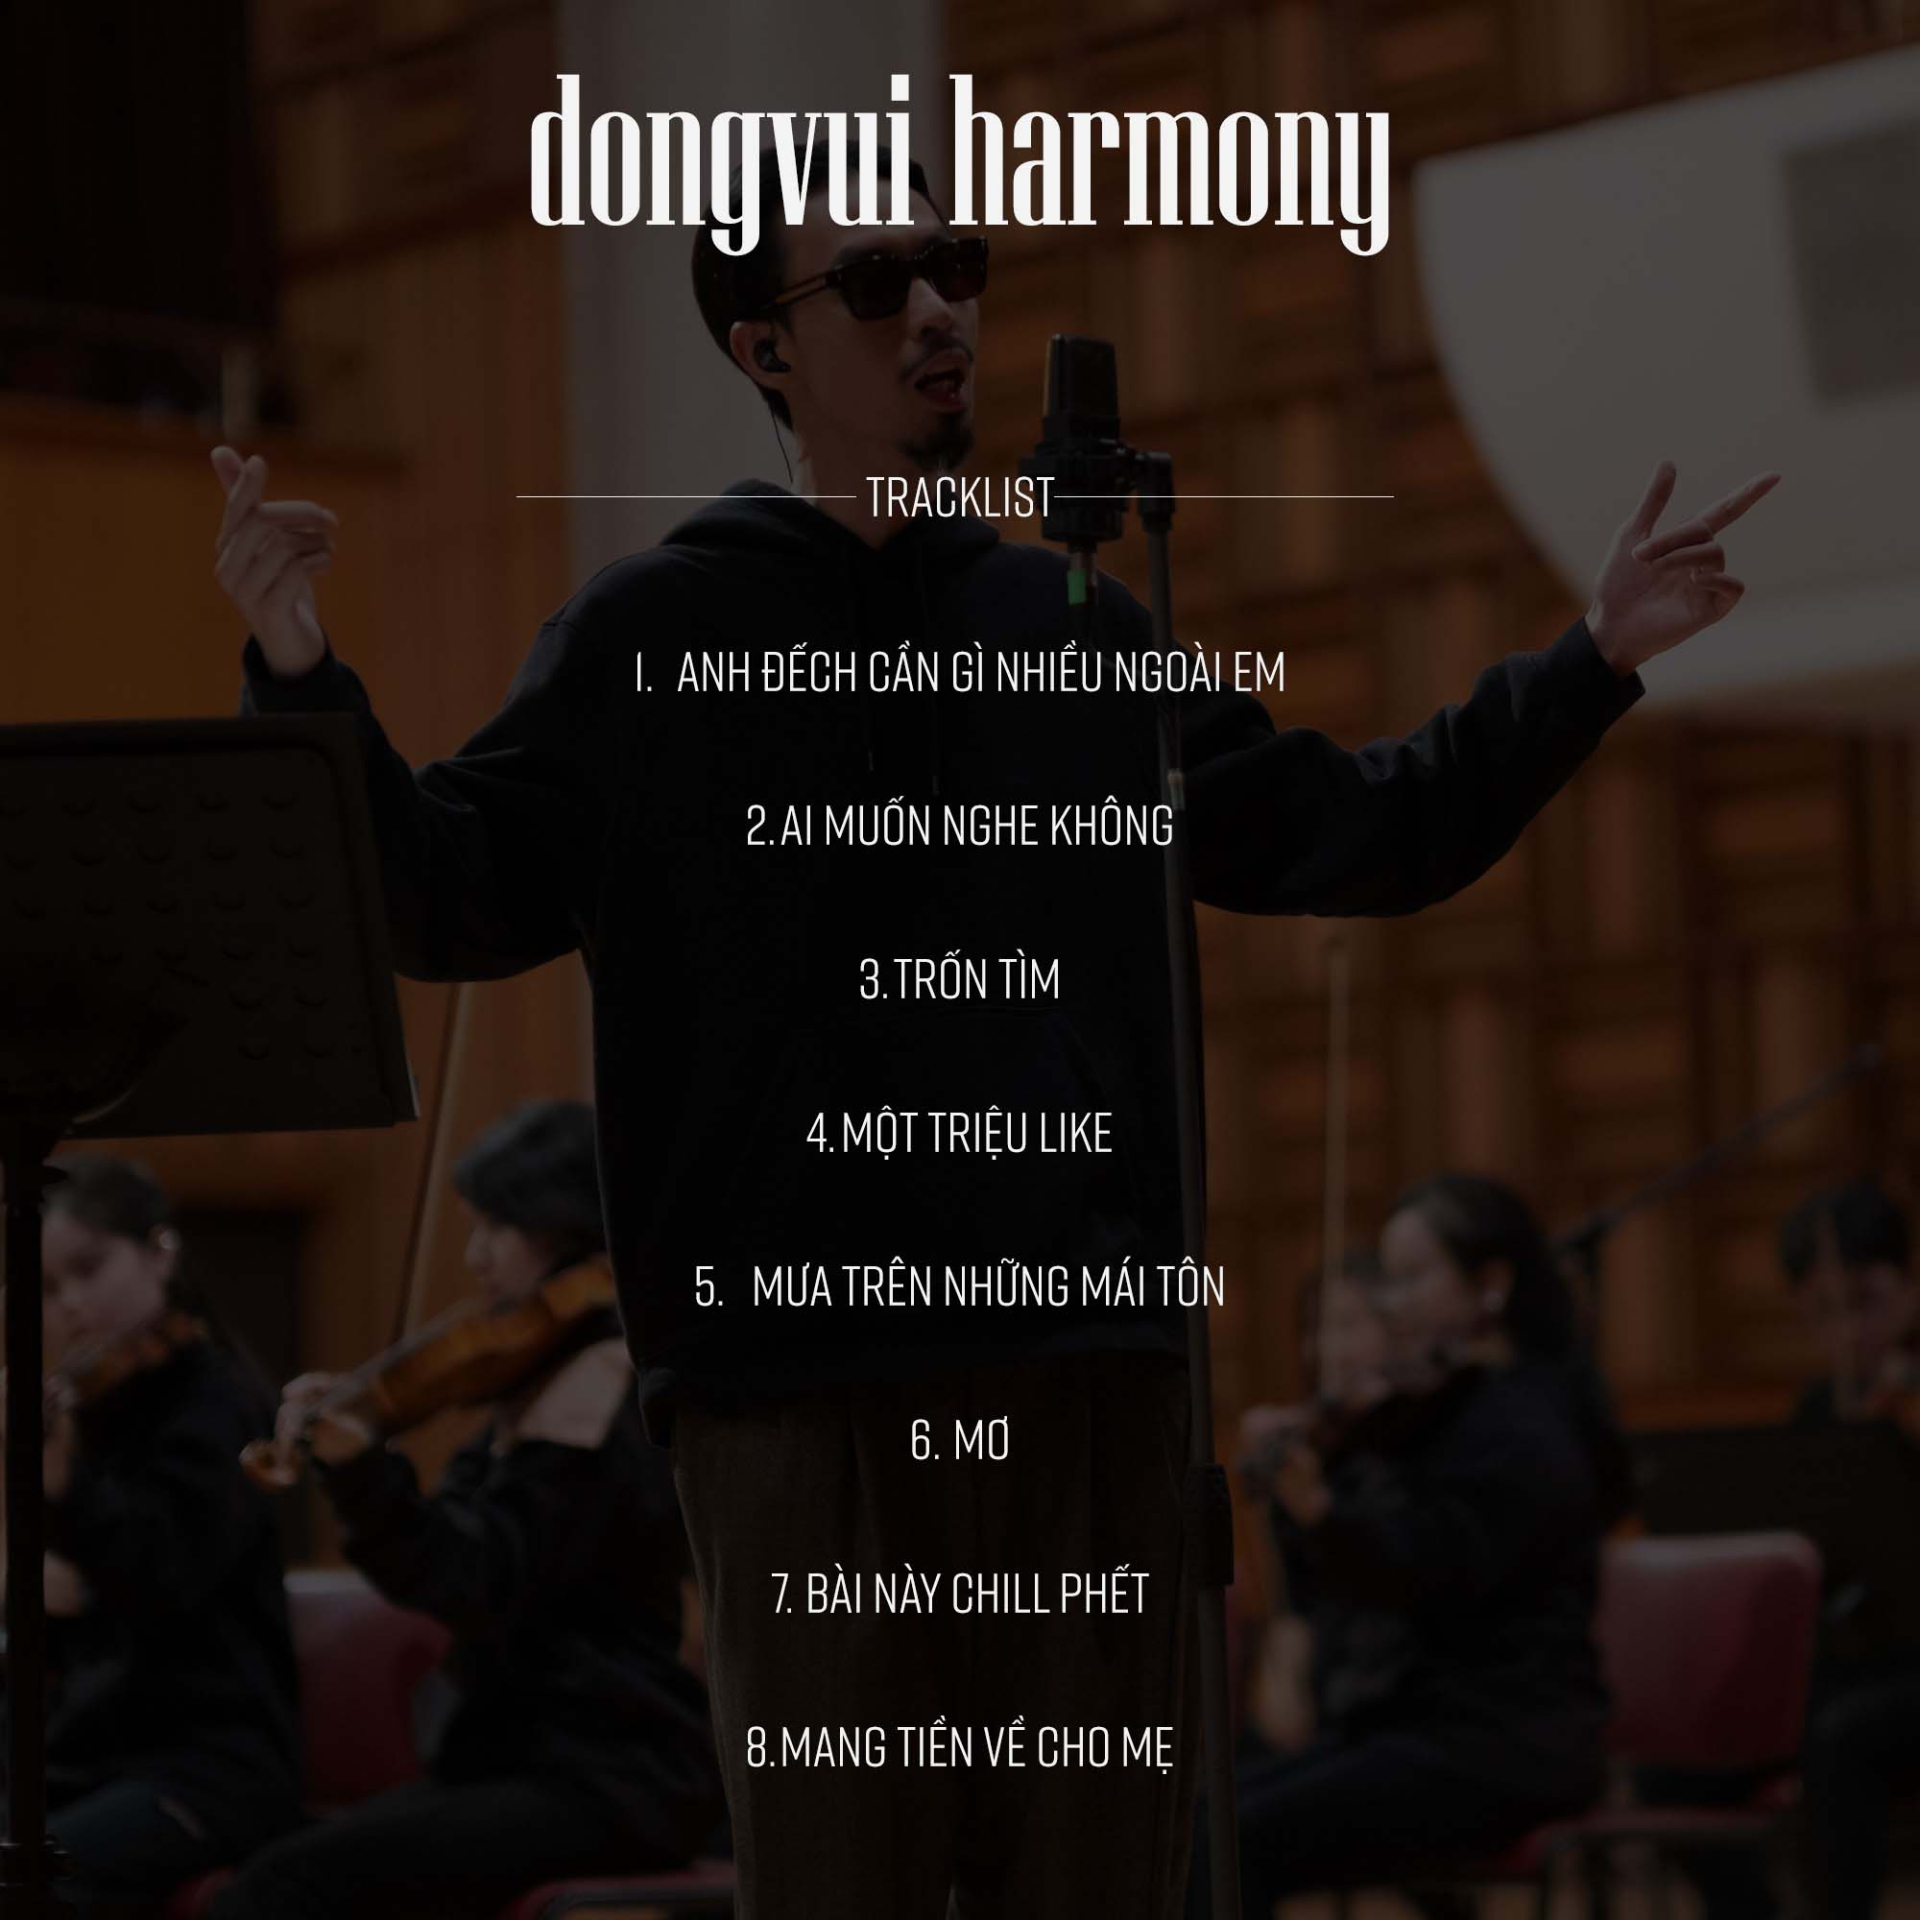 Đen kết hợp hài hoà Rap, Hip-hop và nhạc giao hưởng trong album “dongvui harmony' - ảnh 2